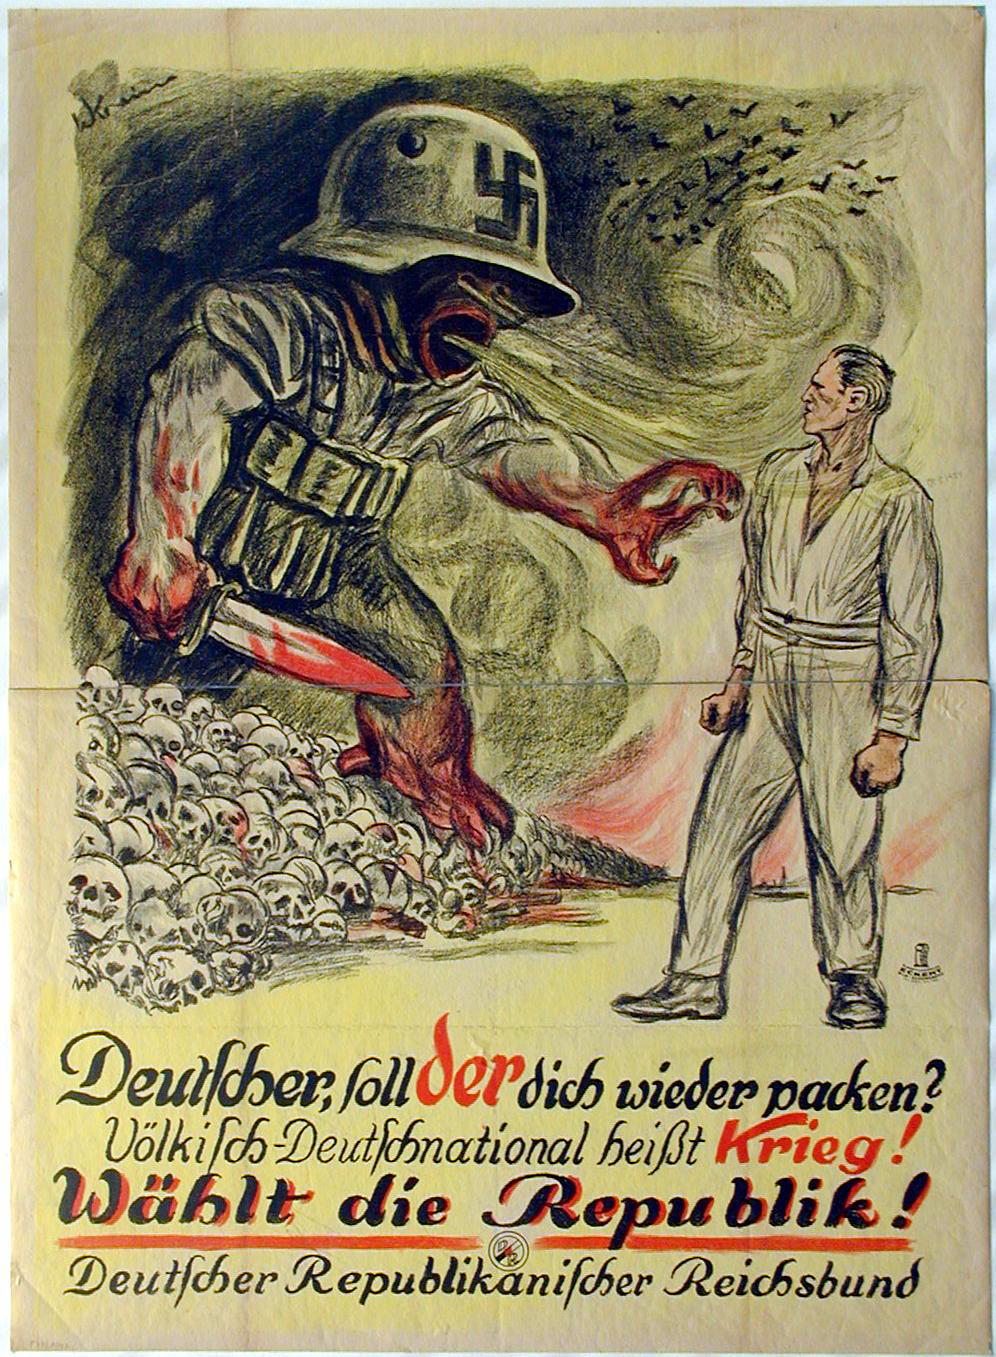 Plakat: Wahlaufruf des Deutschen Republikanischen Reichsbundes, um 1924